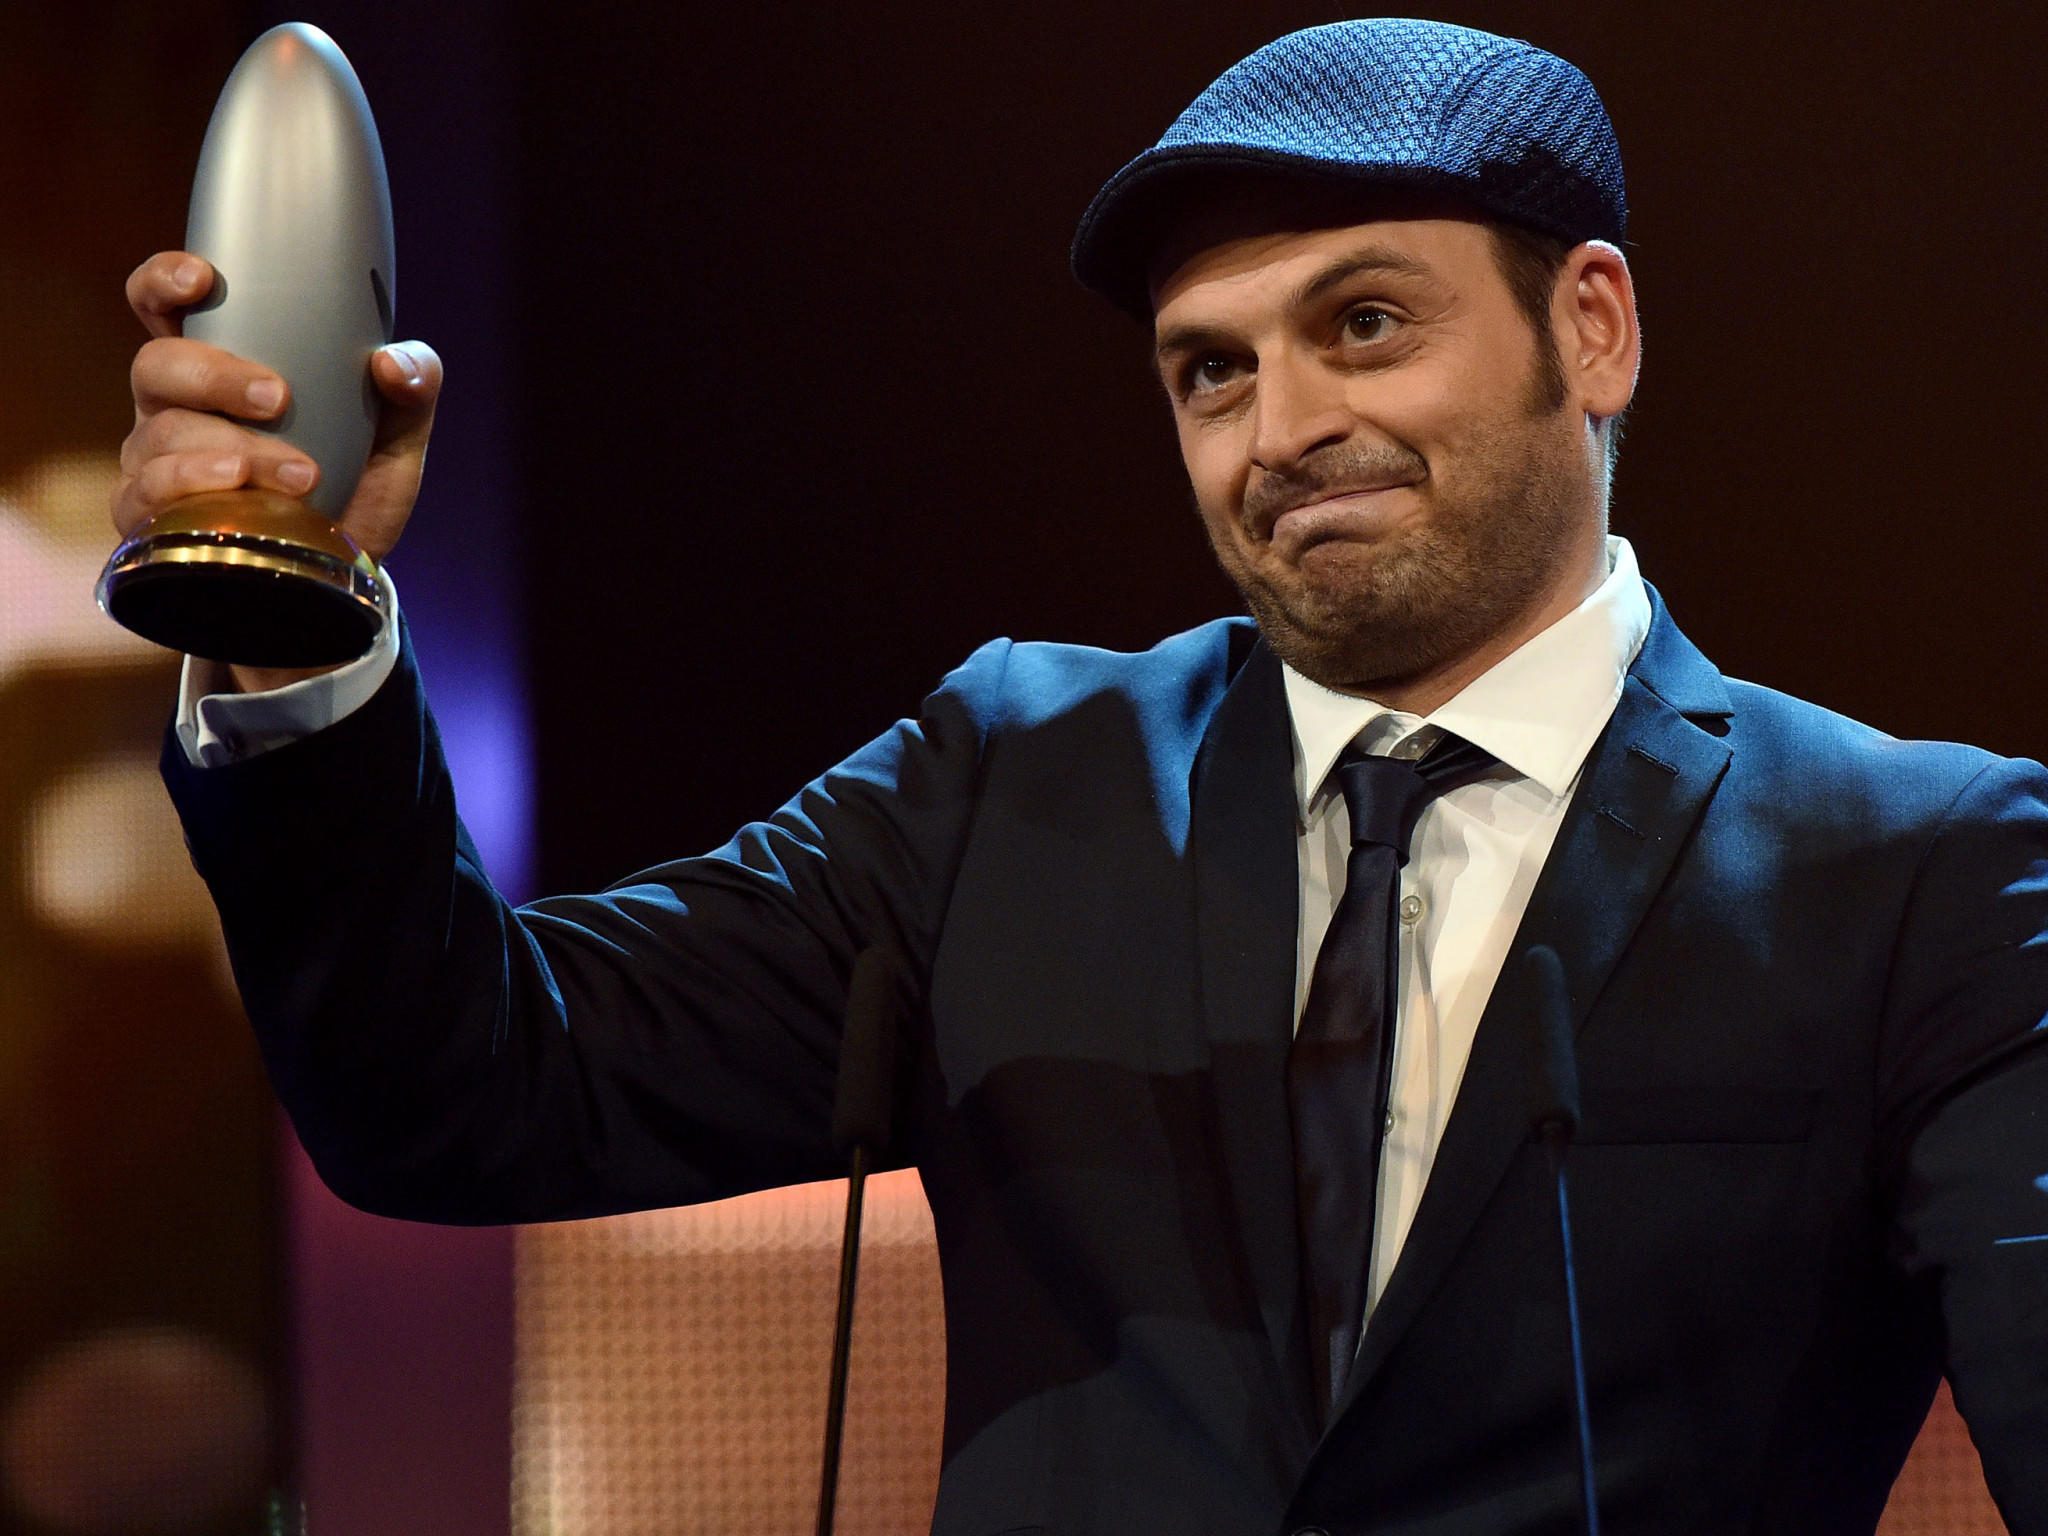 Comedypreis 2014: Das sind die Gewinner 2014